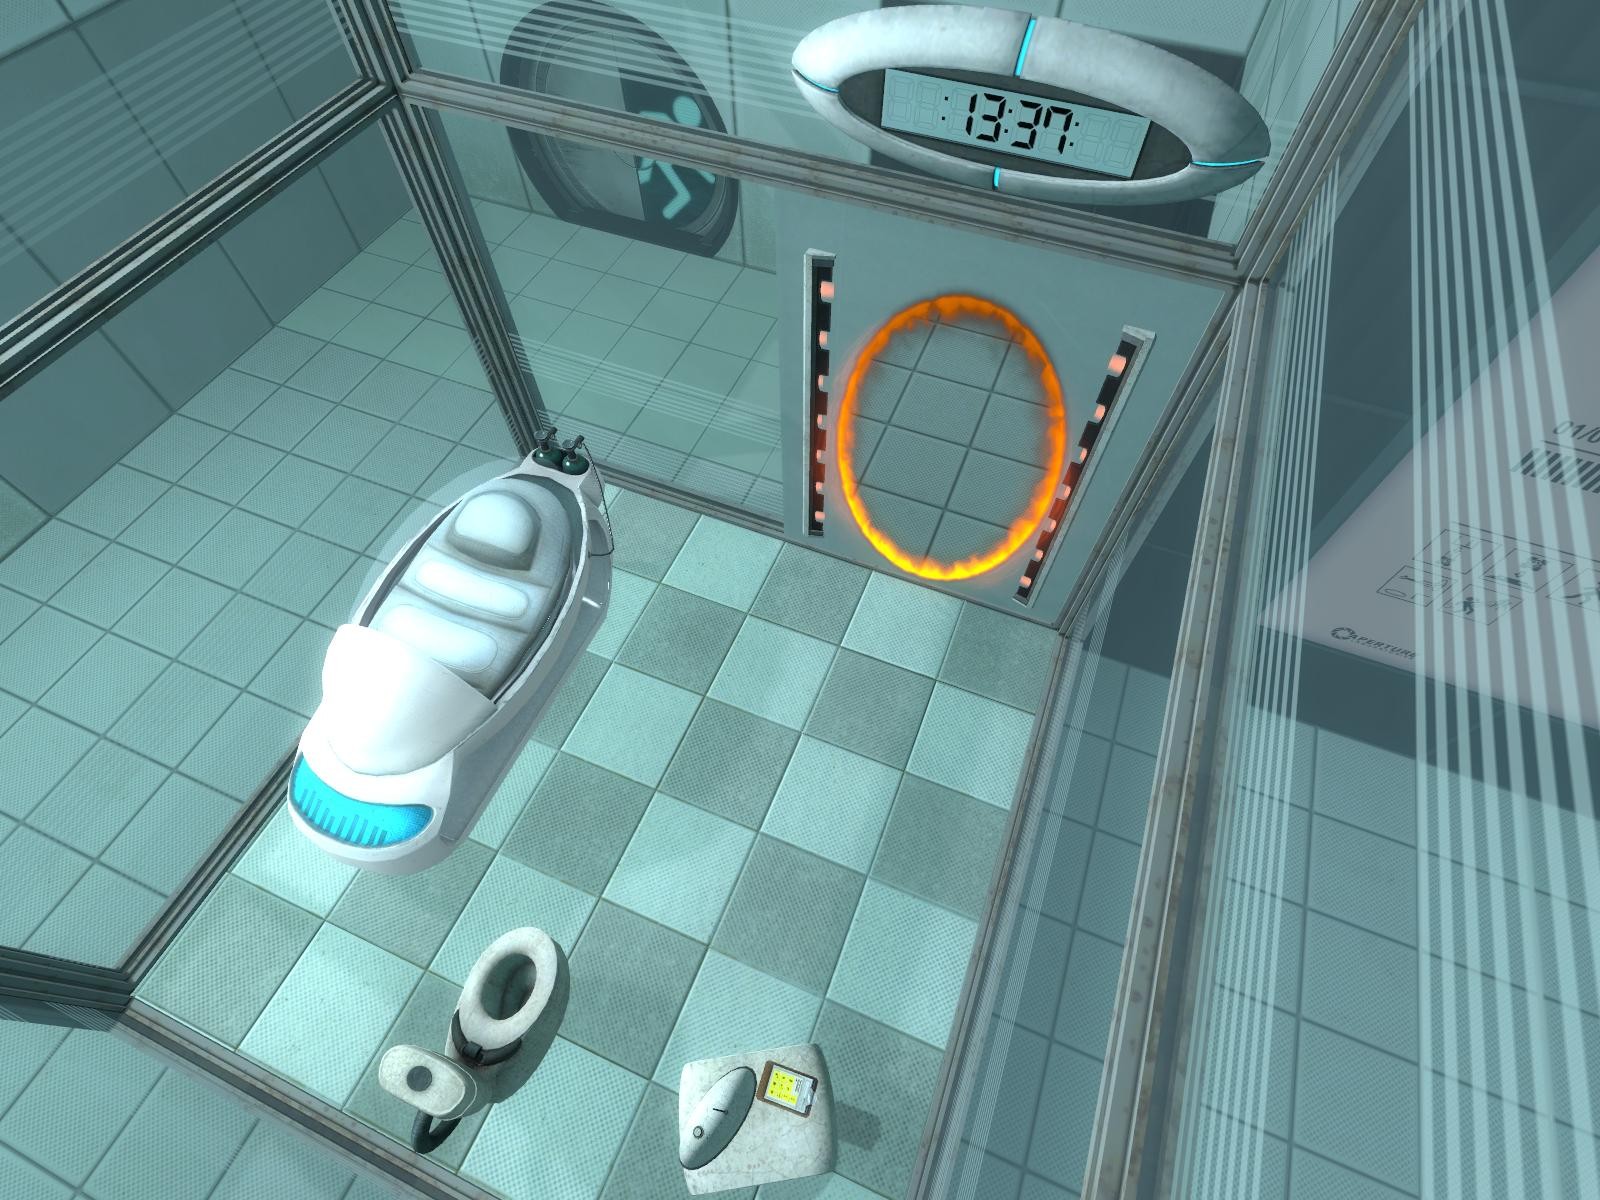 Камеры портал 1. Portal 1 и 2. Portal 2 комната. Portal 2 комната в начале.